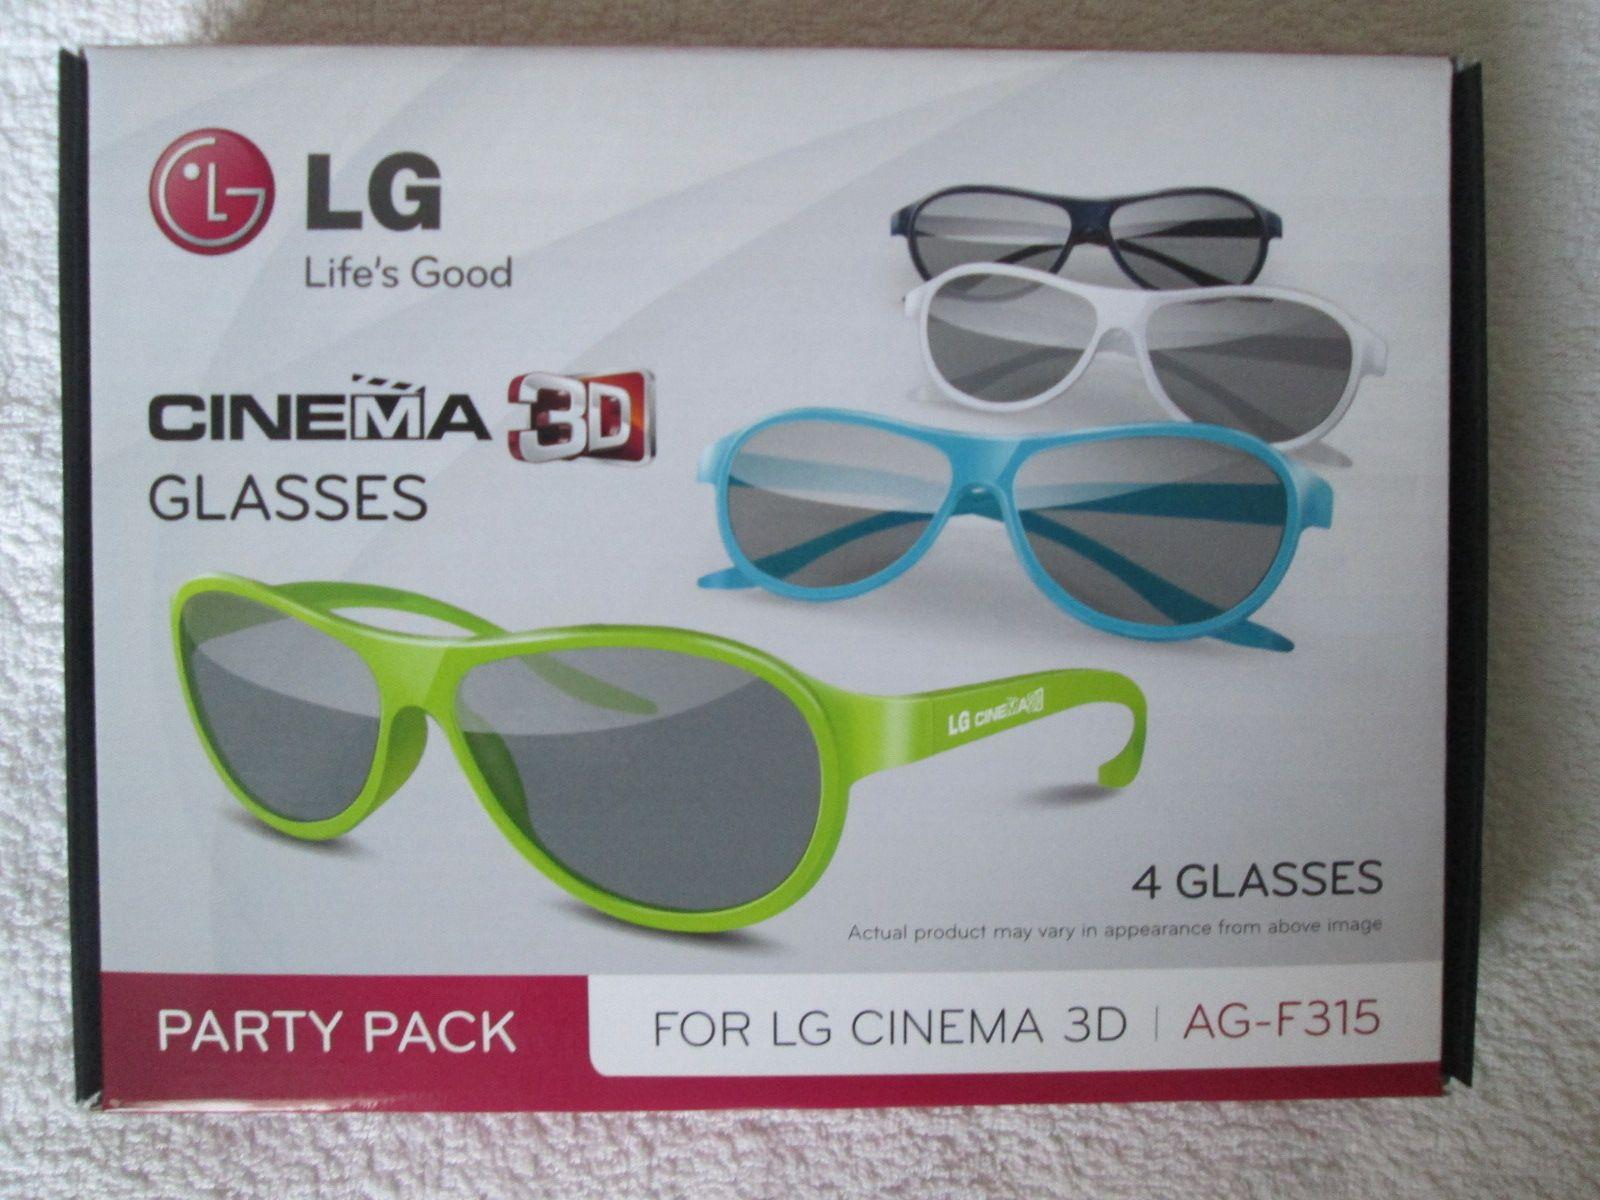 Lunettes CINEMA 3D LG, Party Pack composé de 4 paires de lunettes  originales et colorées